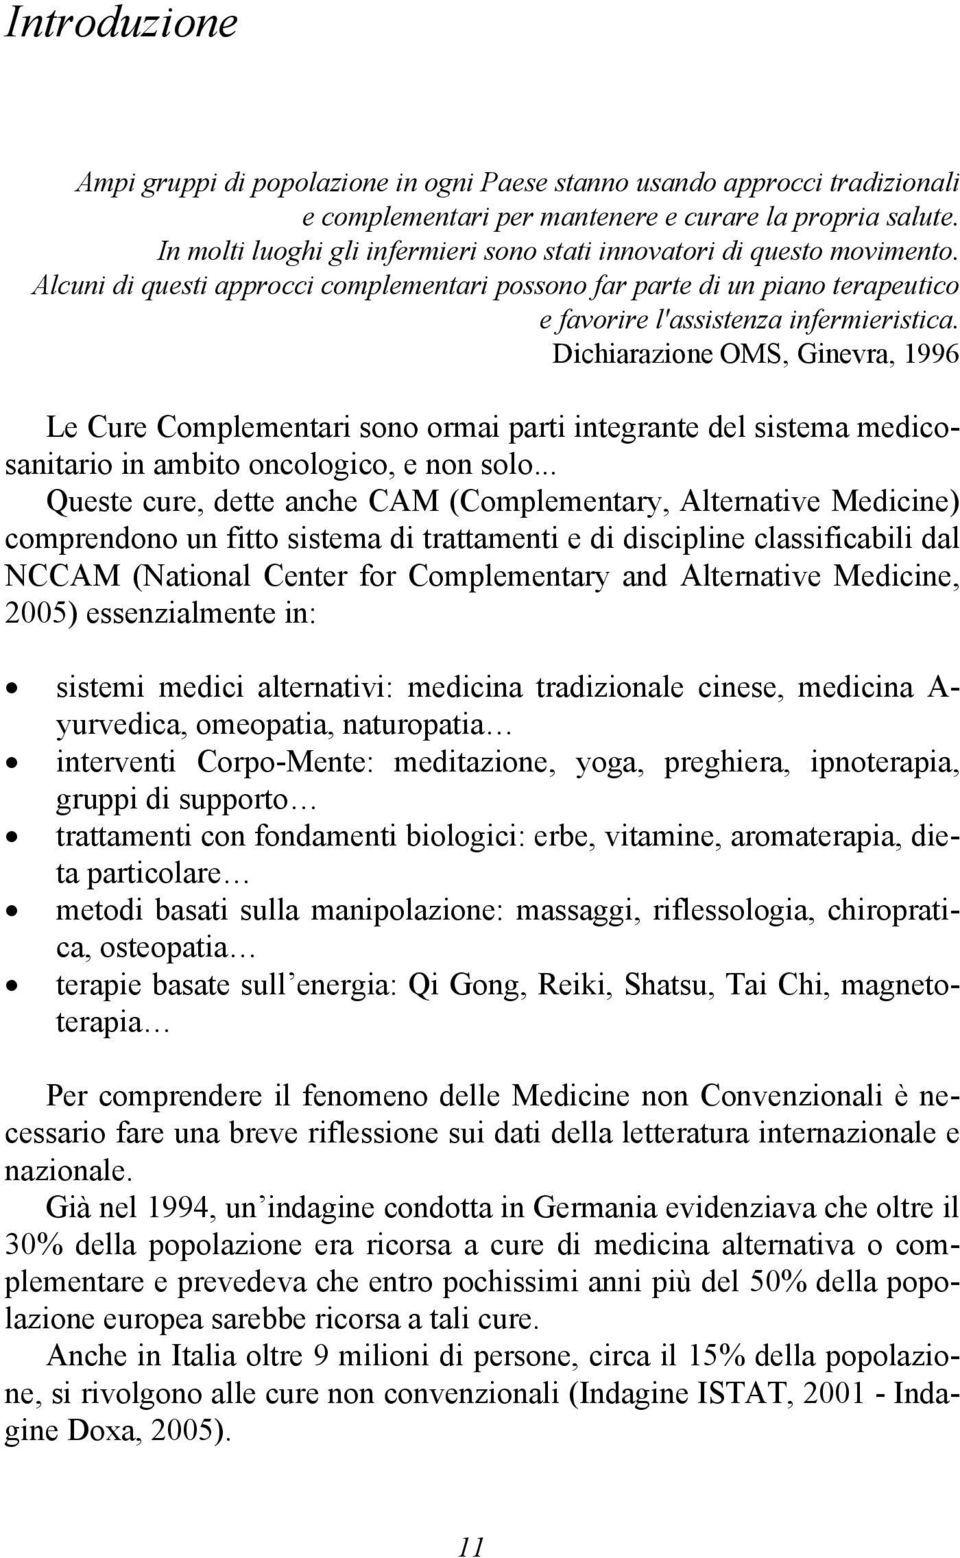 Dichiarazione OMS, Ginevra, 1996 Le Cure Complementari sono ormai parti integrante del sistema medicosanitario in ambito oncologico, e non solo.